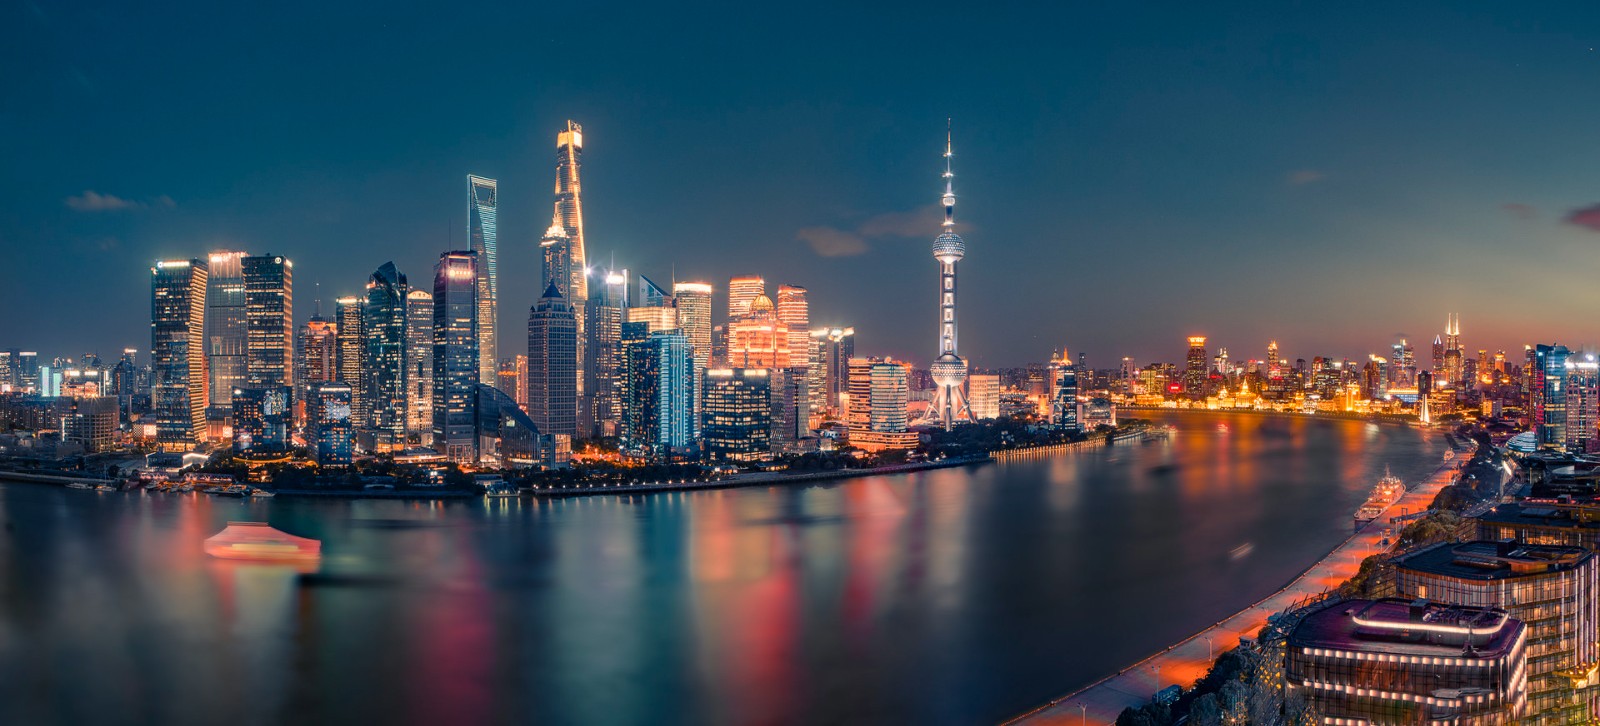 中国城市夜间经济指数发布 上海、深圳、北京位列前三